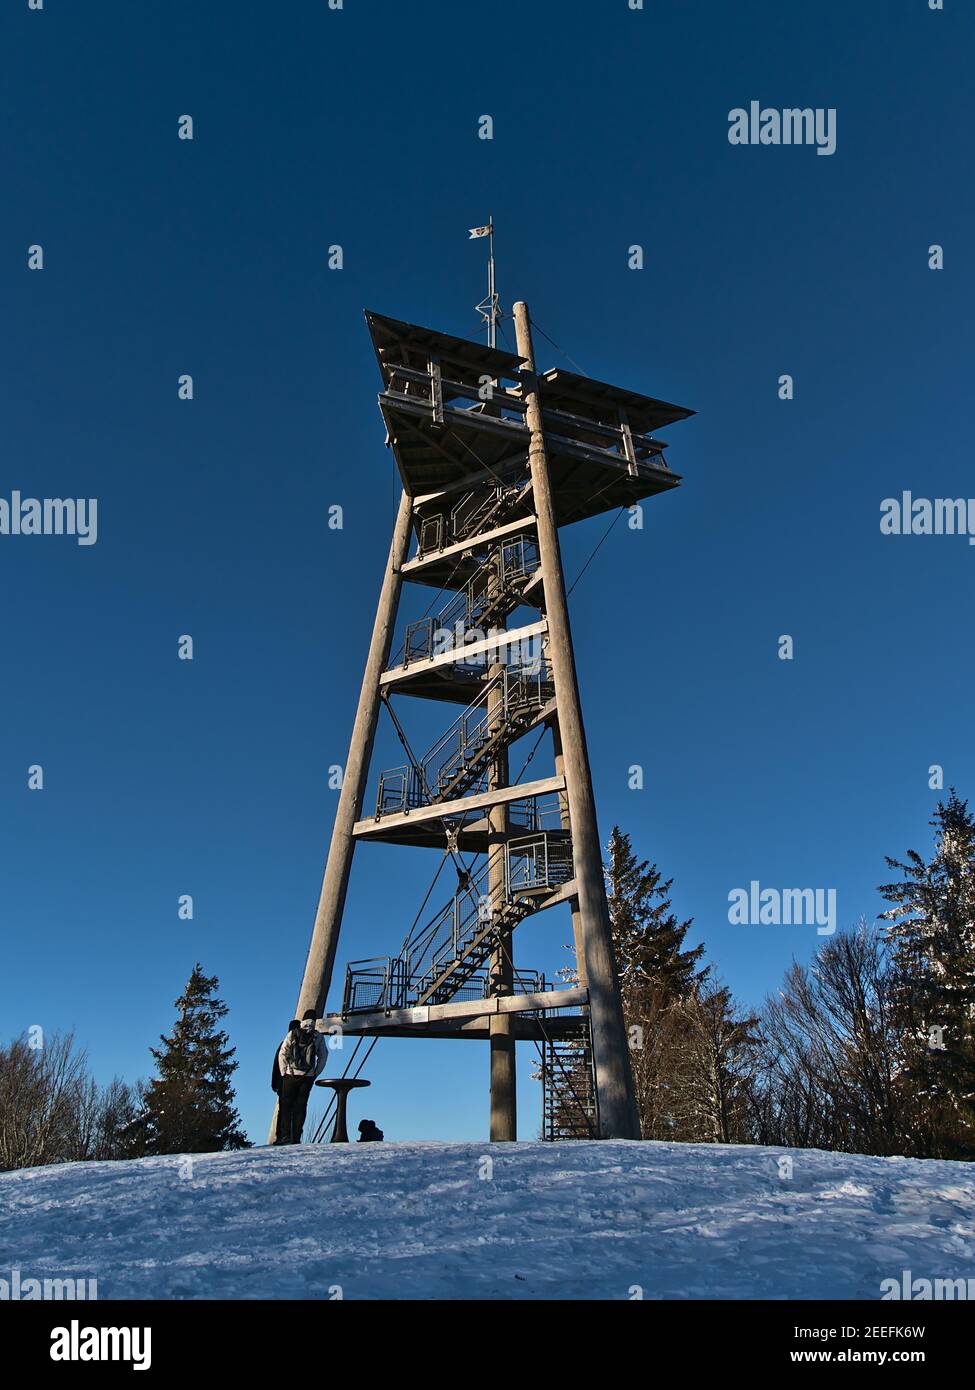 Vue de la tour d'observation en bois Eugen-Keidel-Turm sur le sommet du Schauinsland (1,284 m) dans la chaîne de montagnes de la Forêt Noire, Allemagne en hiver. Banque D'Images